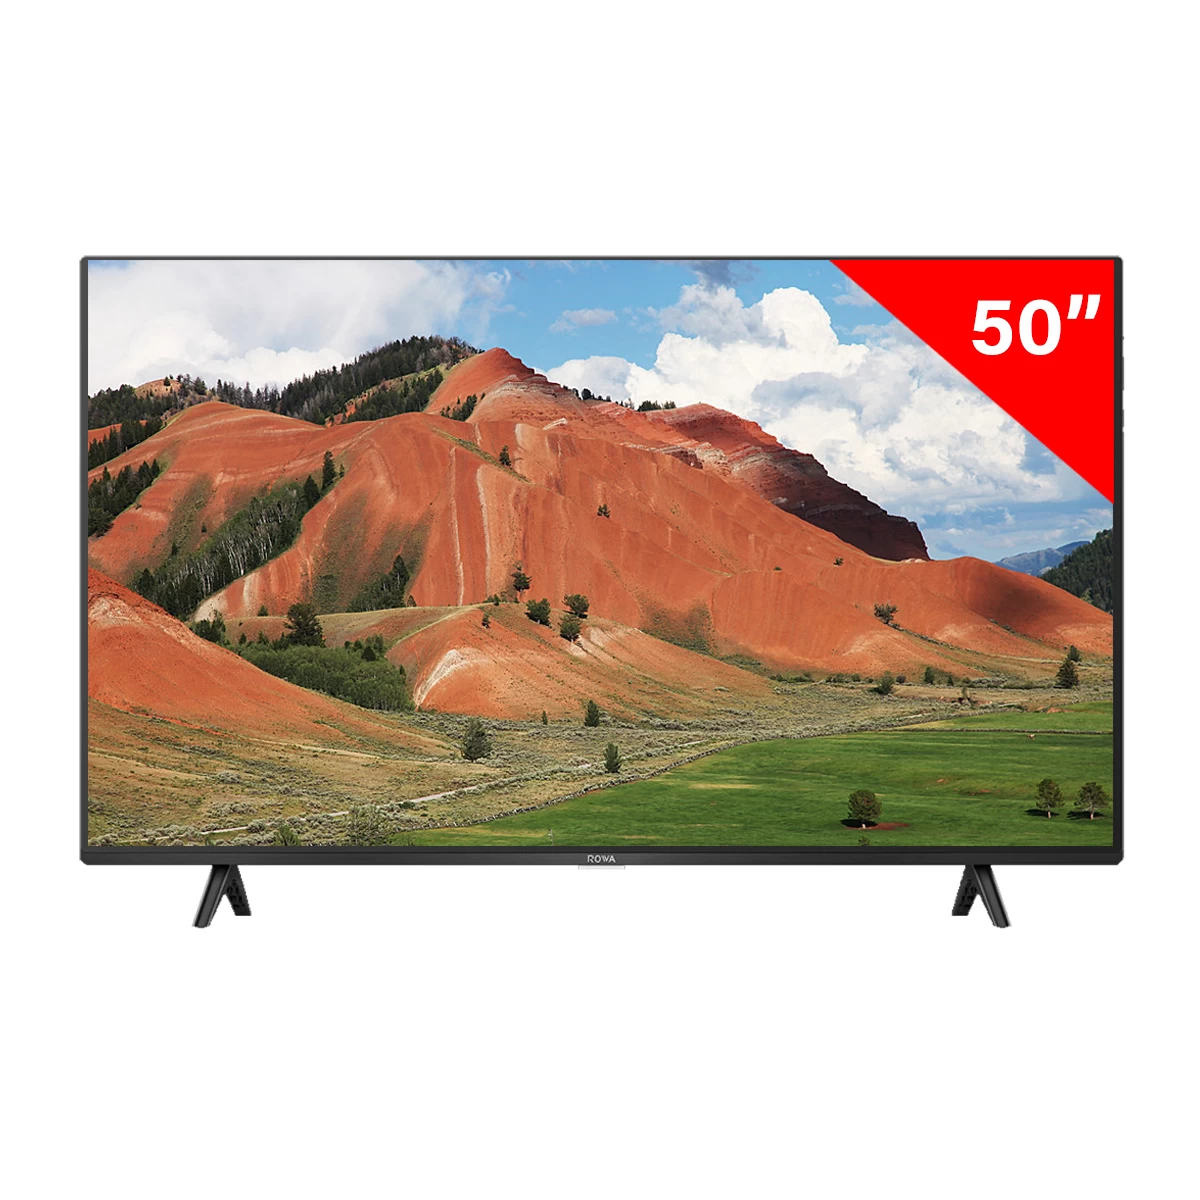 ROWA 50 inch 4K Smart TV | ROWA 50U62